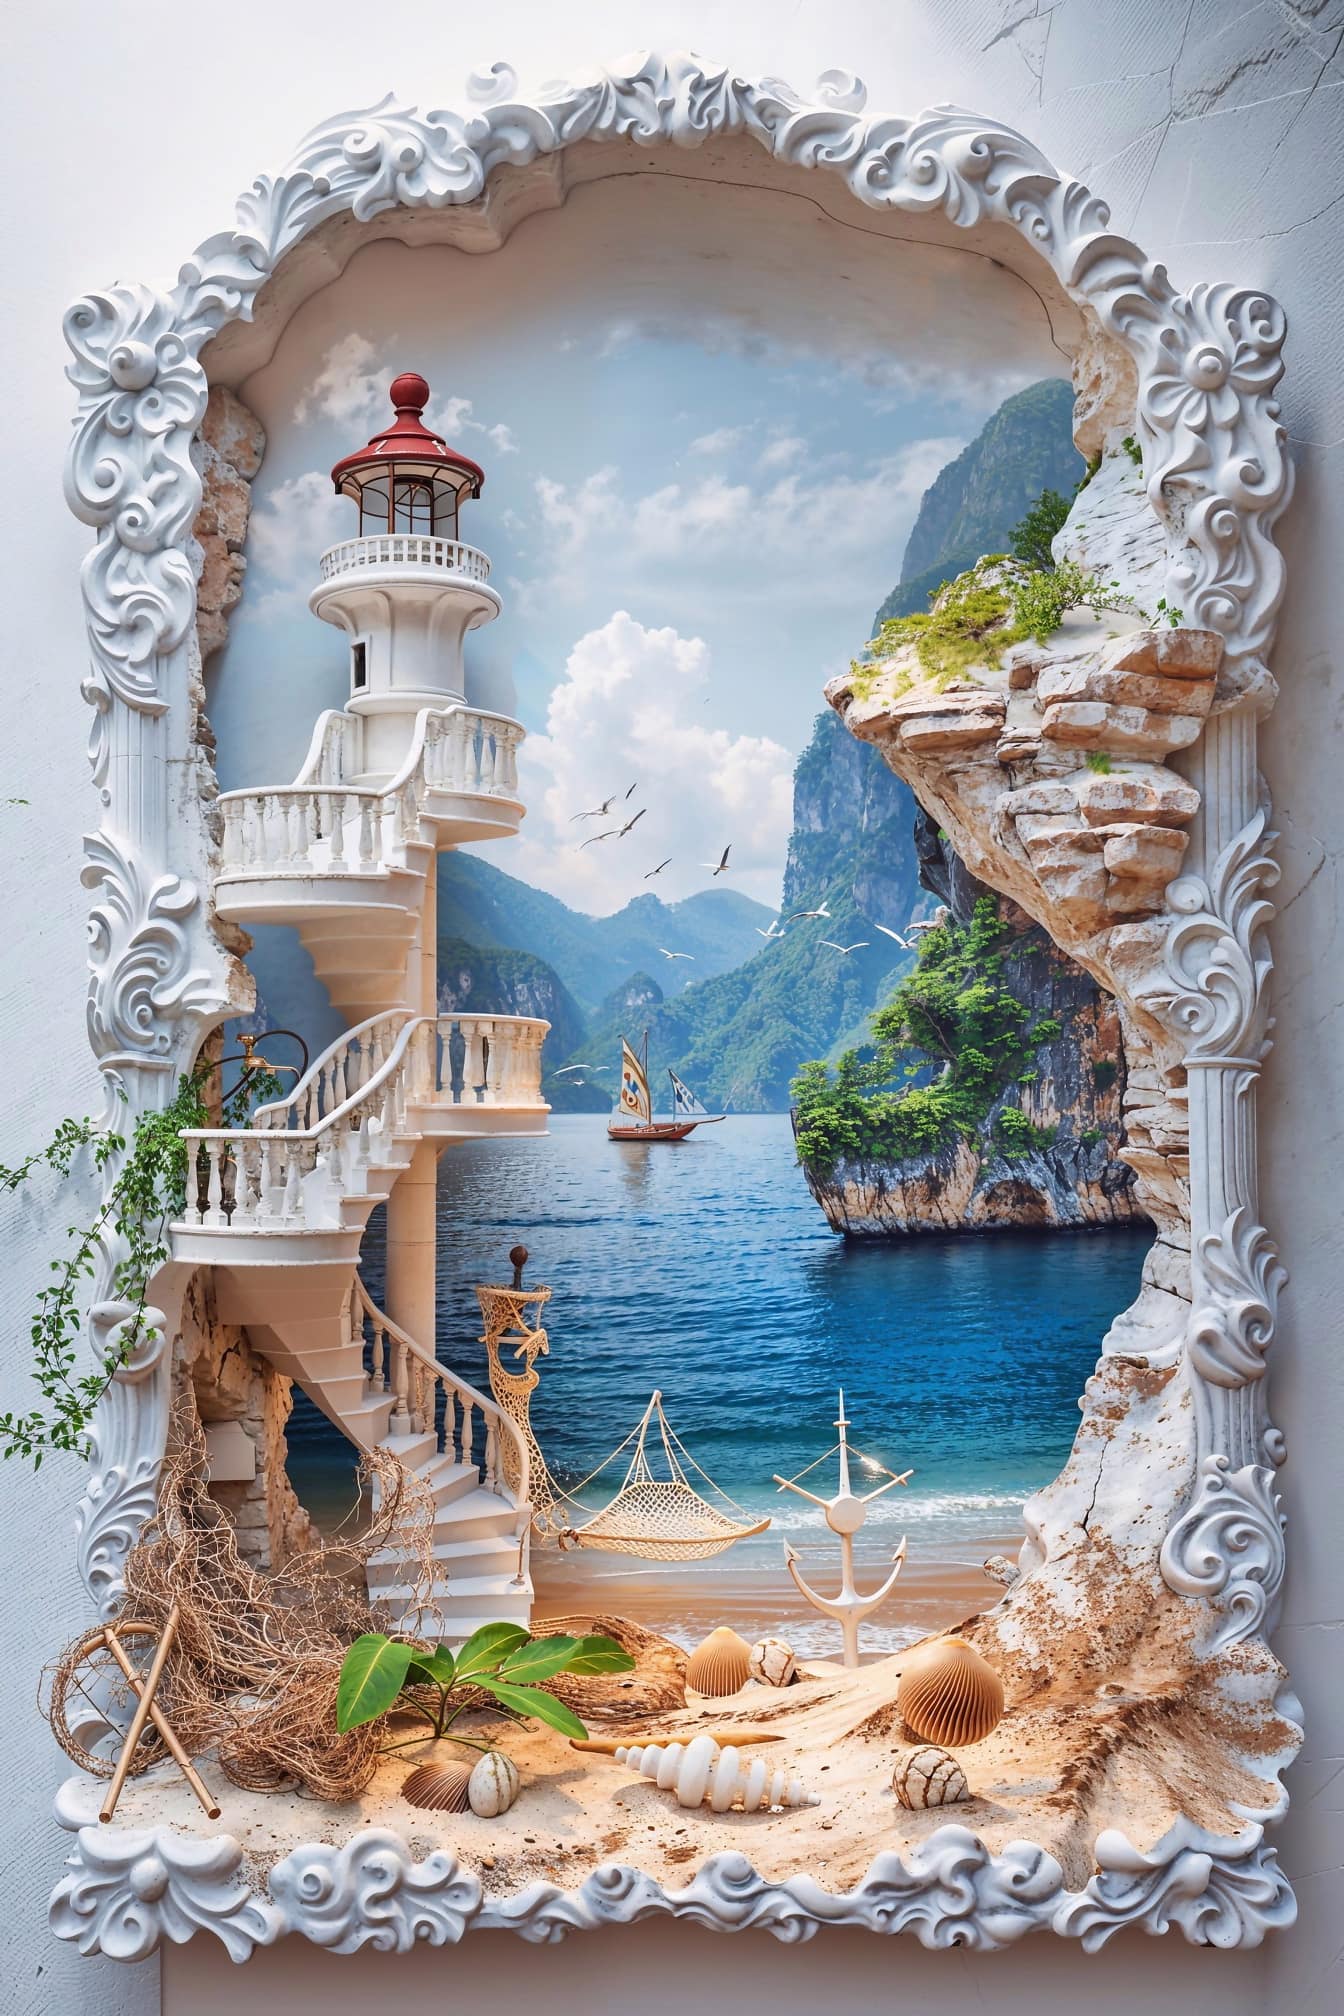 Un marco blanco en relieve 3D con faro y una imagen de barco, una decoración en la pared en estilo náutico